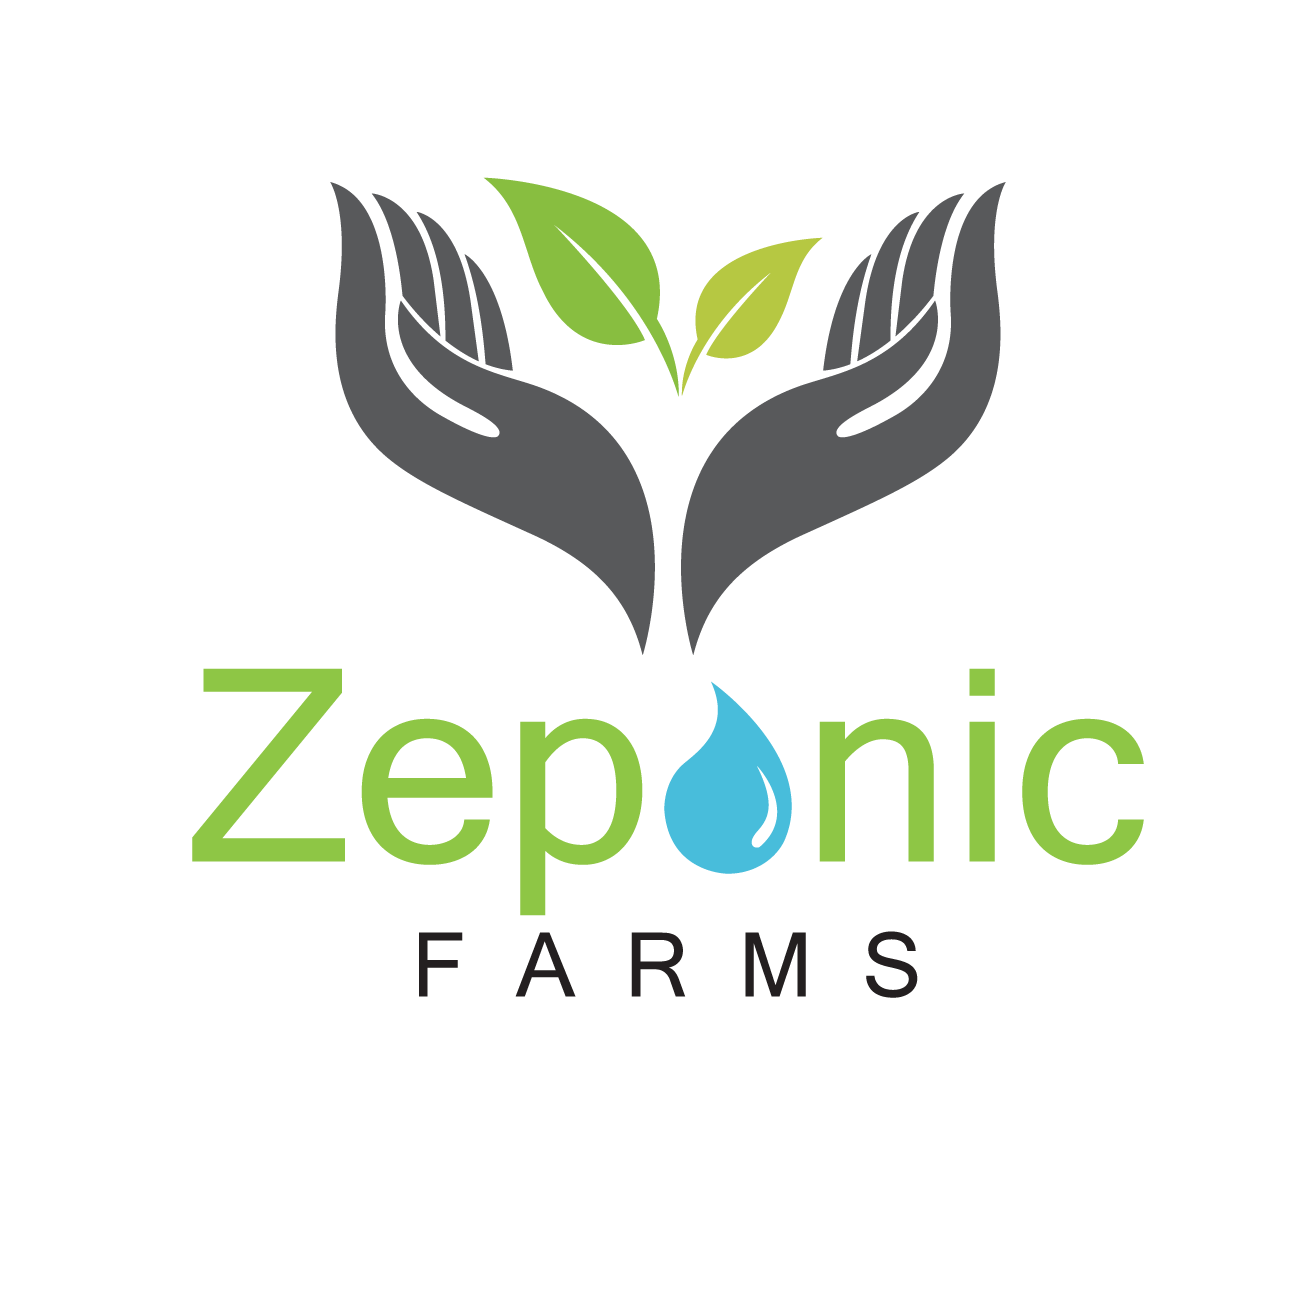 Zeponic Farms